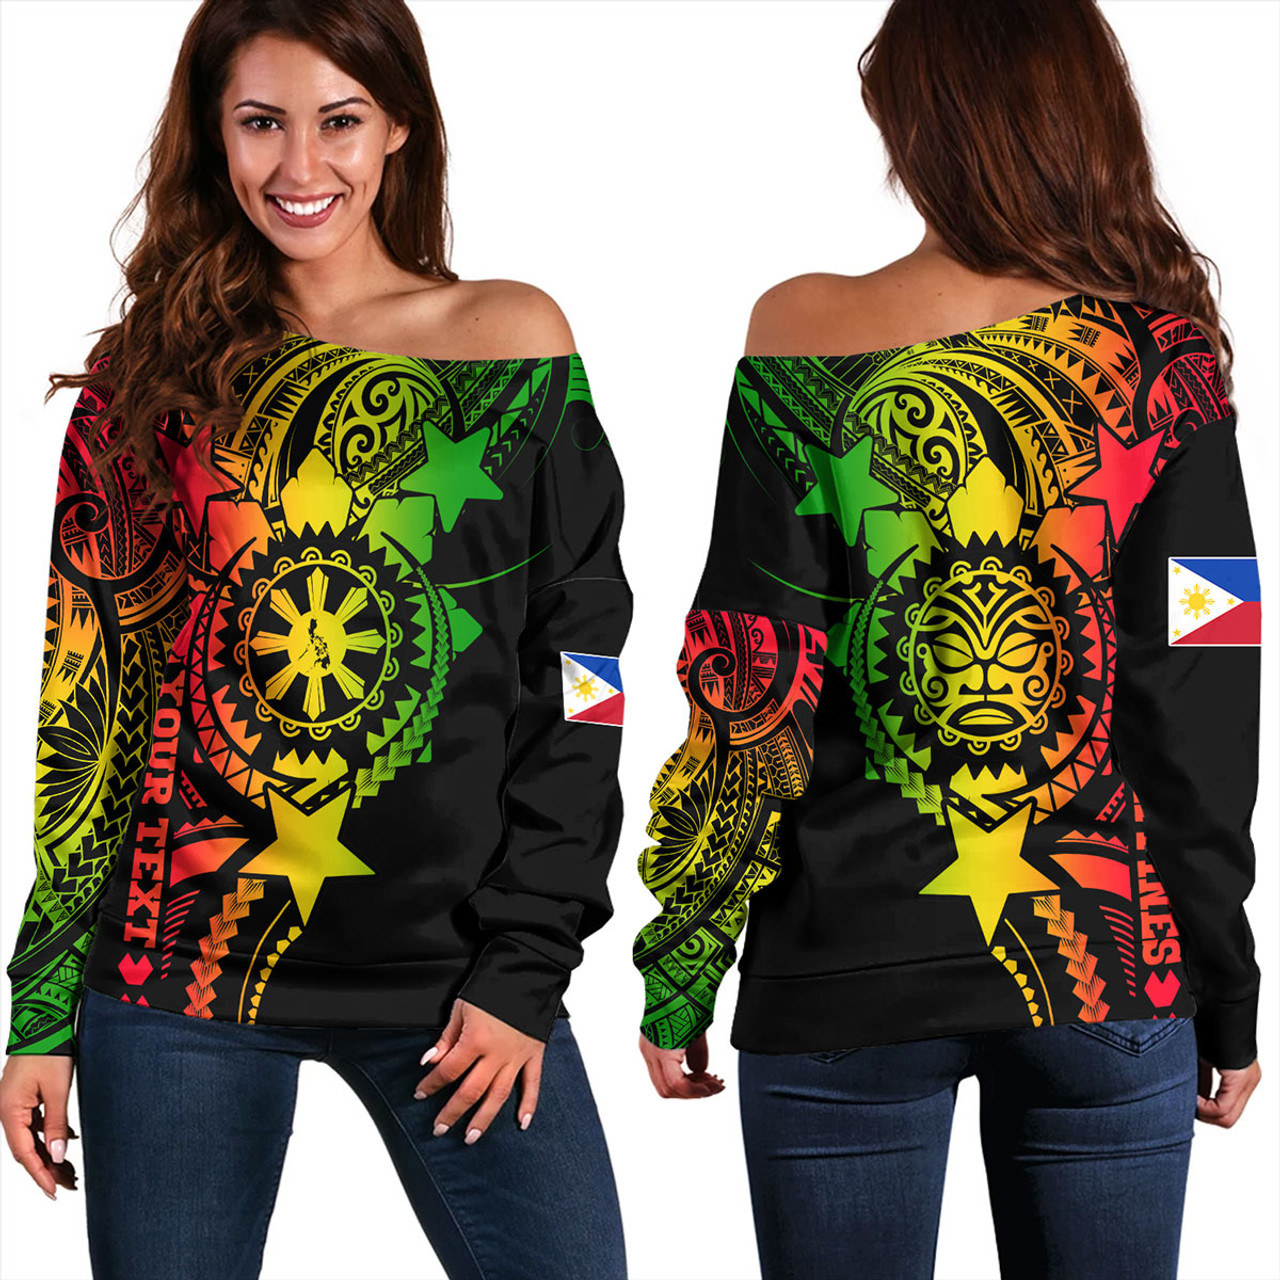 Philippines Filipinos Off Shoulder Sweatshirt - Proud To Be Filipino Tribal Sun Batok Reggae Style